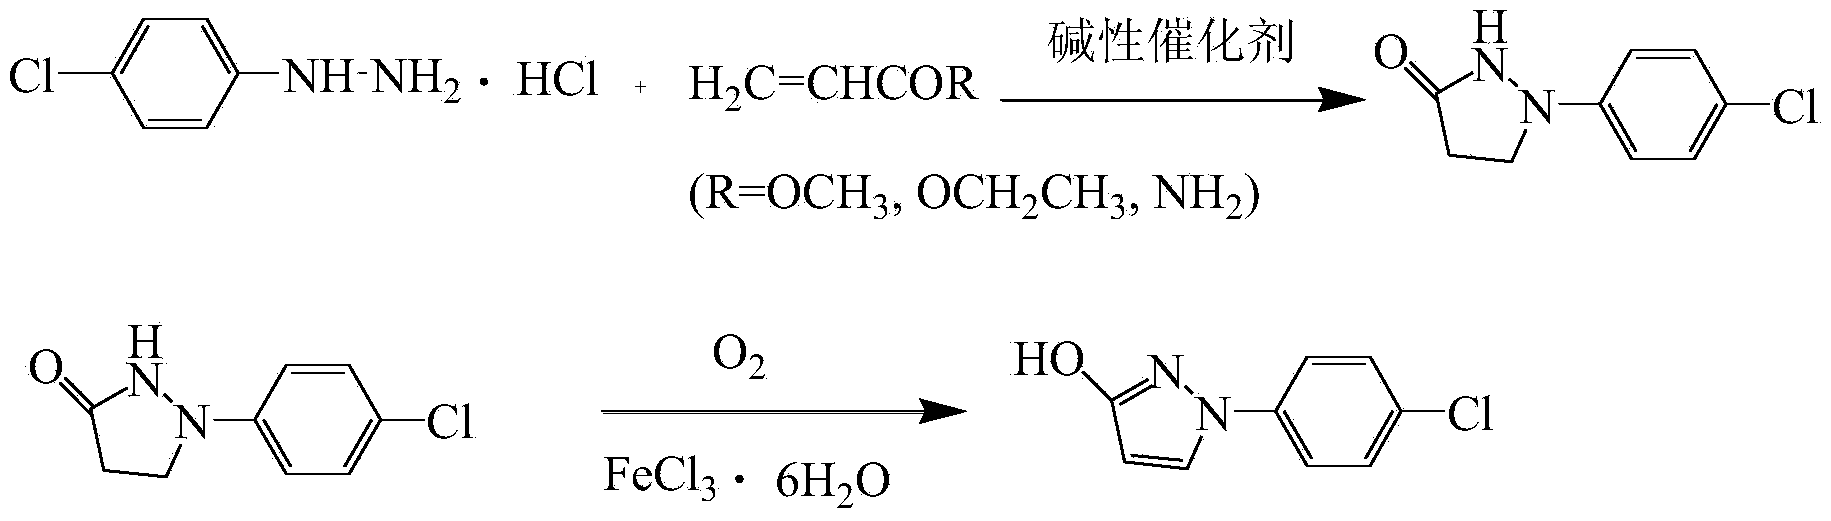 Preparation method of 1-(4-chlorophenyl)-3-hydroxypyrazole